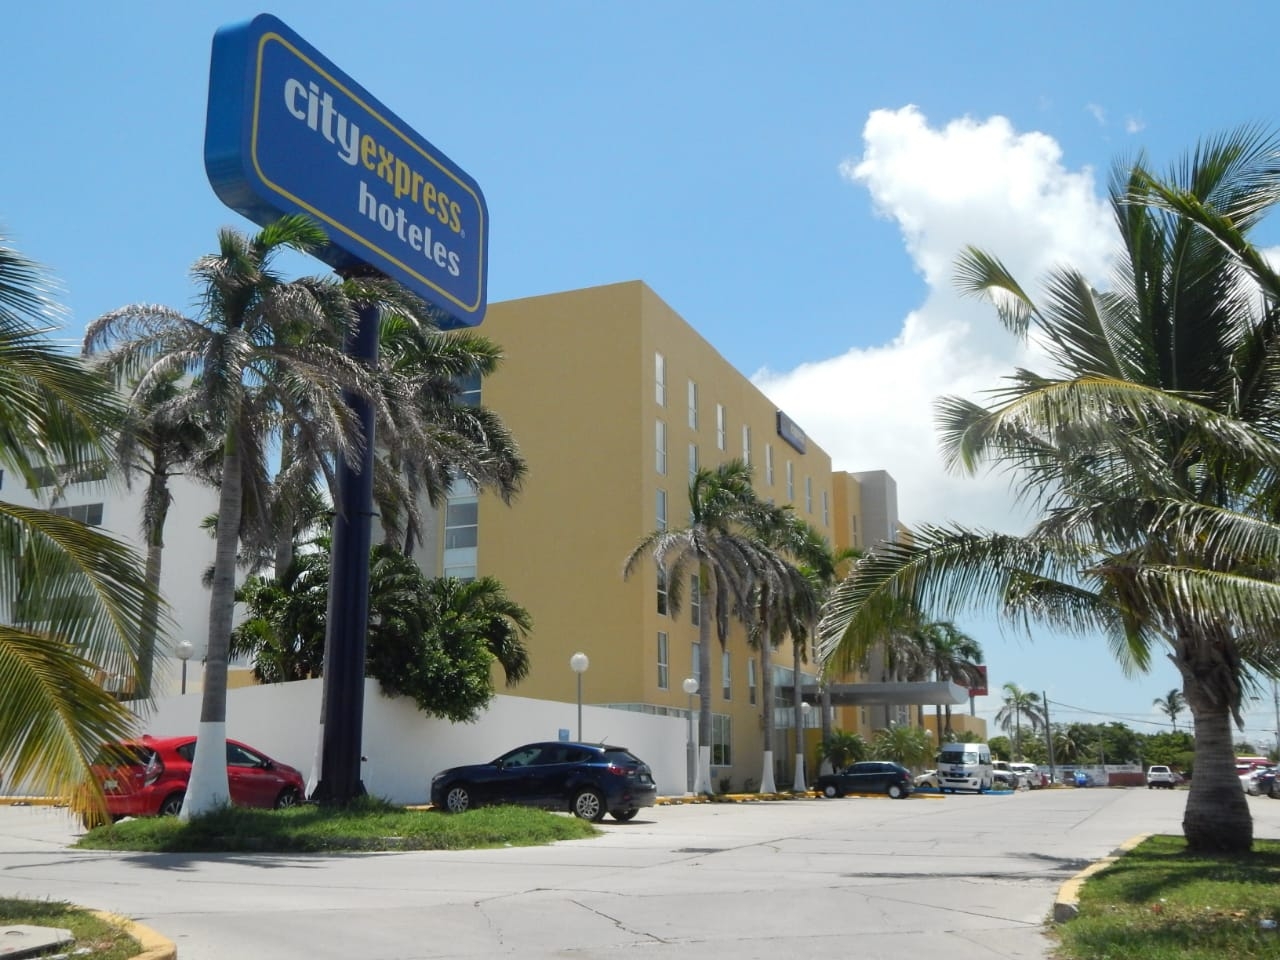 Hoteles de Ciudad del Carmen mantendrán medidas sanitarias